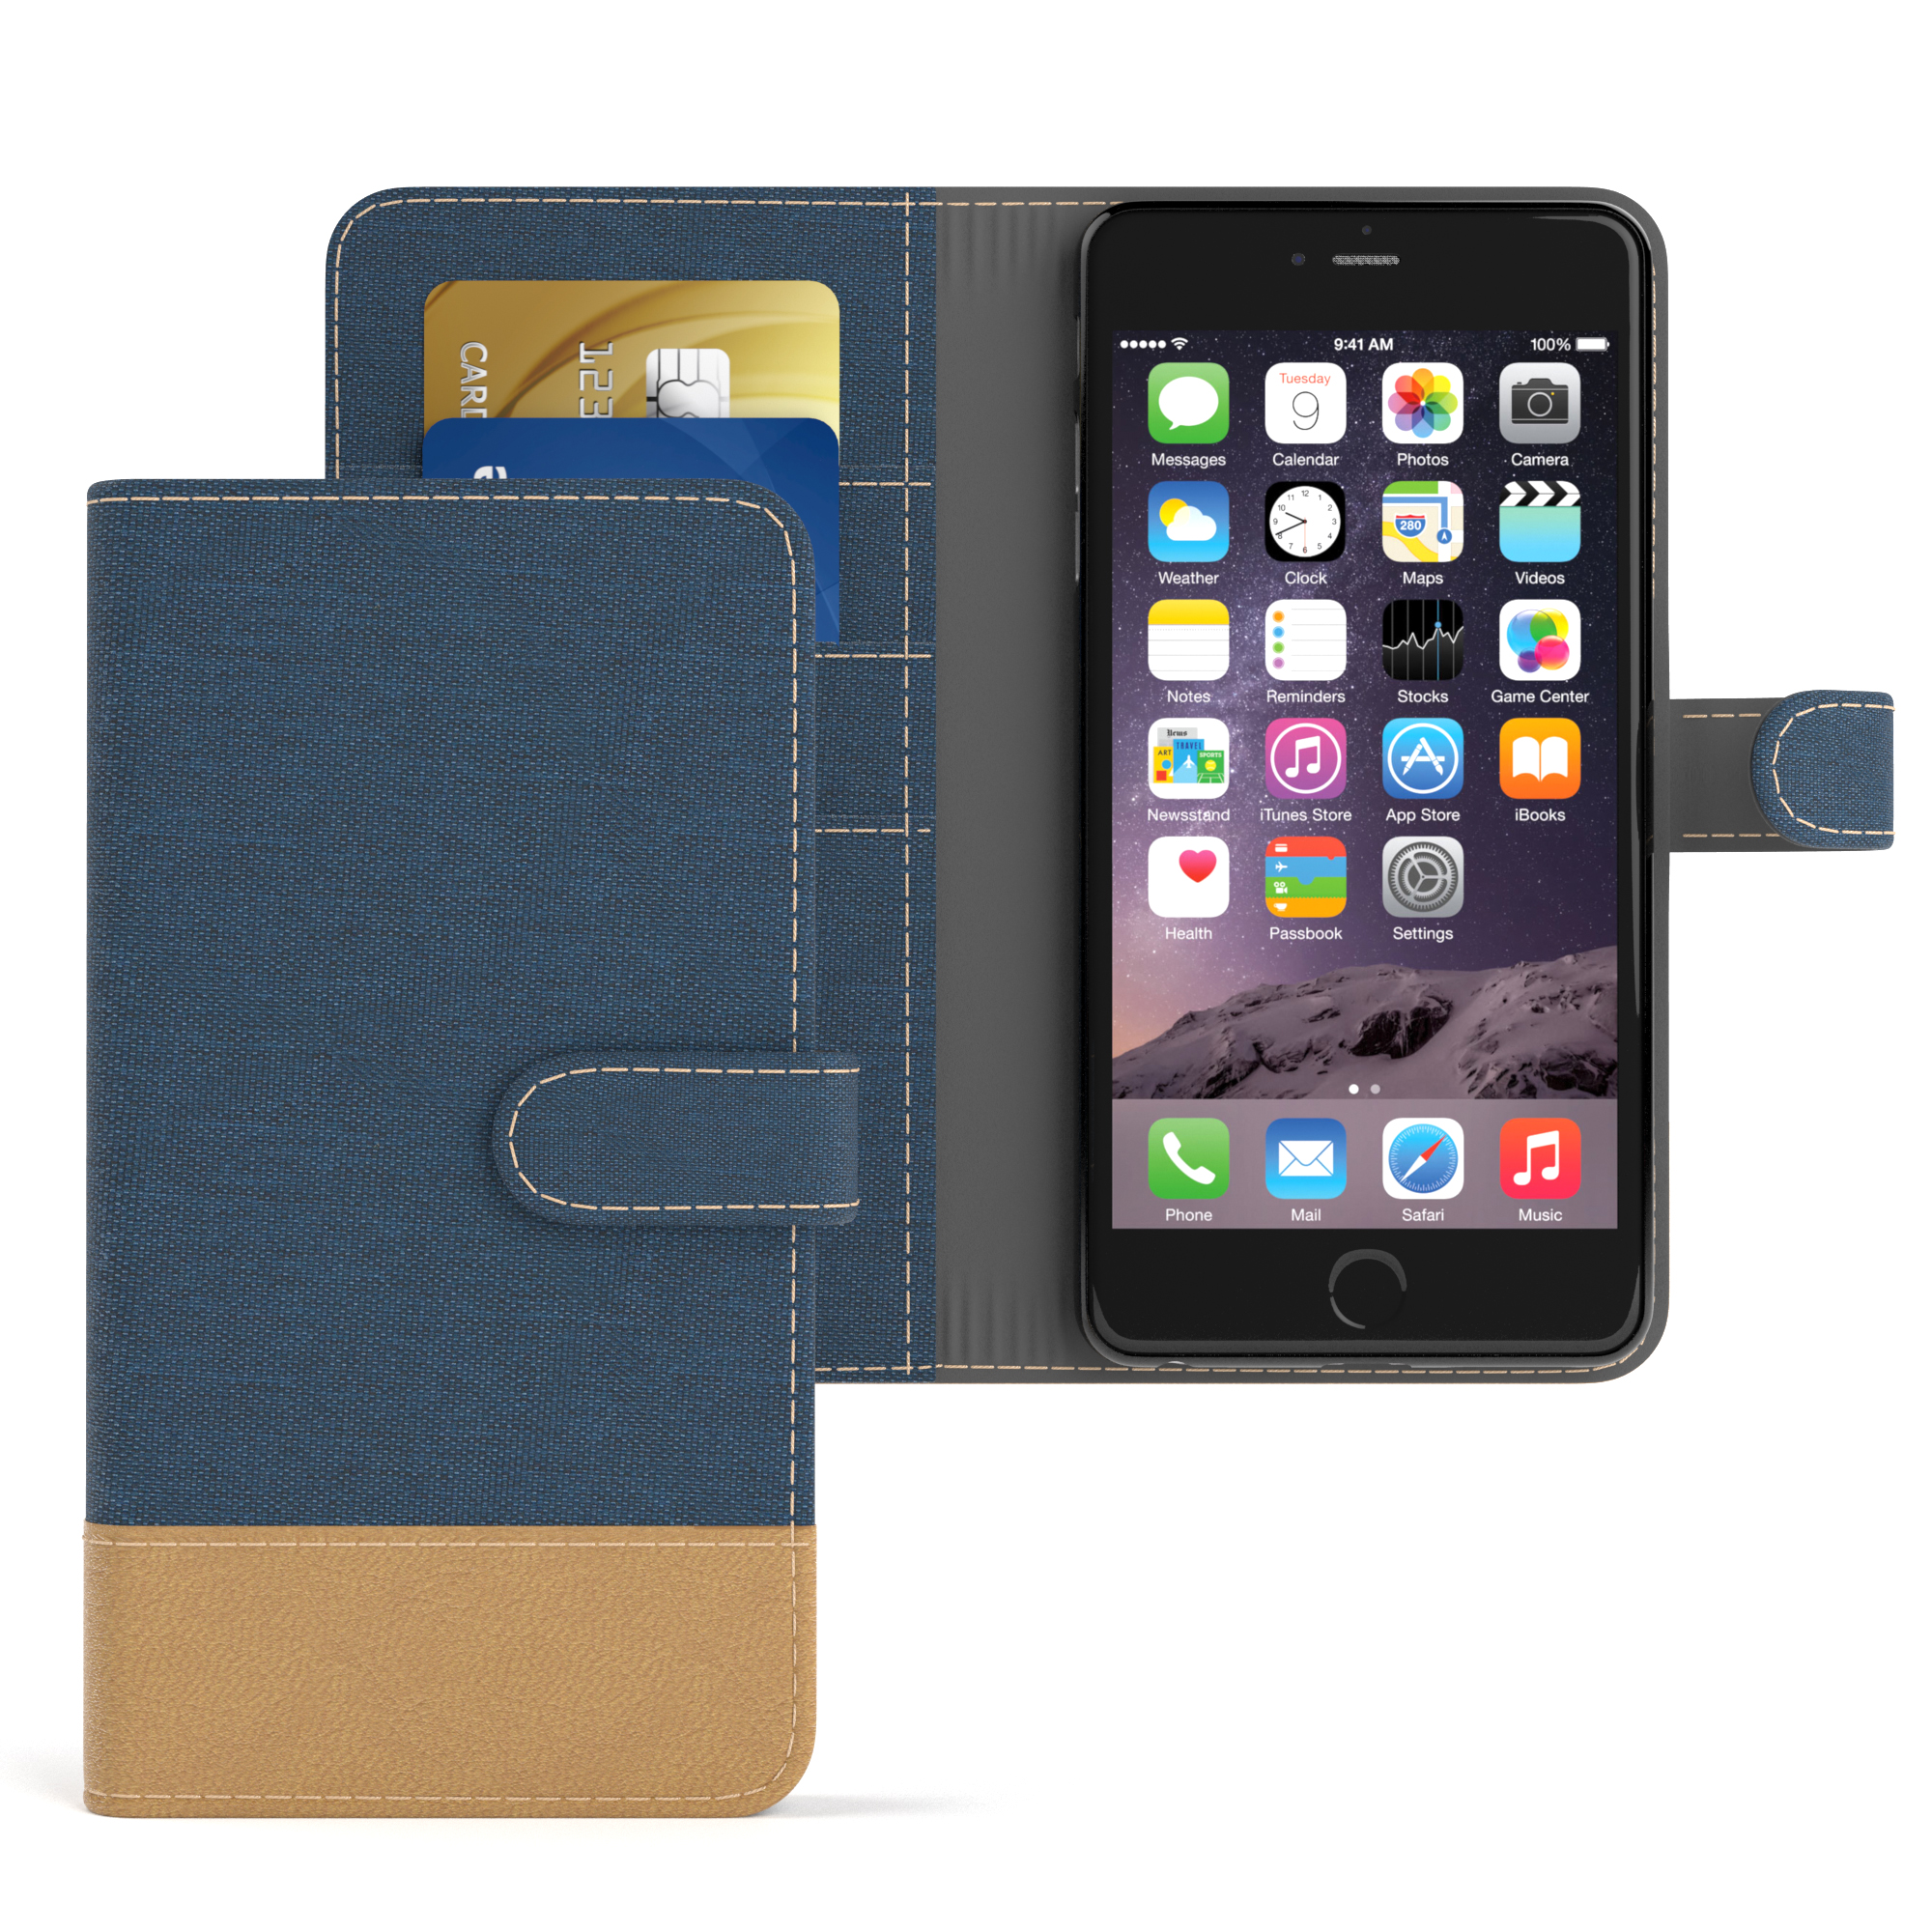 EAZY CASE Bookstyle Klapphülle / Kartenfach, Apple, Plus Plus, Jeans mit iPhone 6S Bookcover, 6 Blau